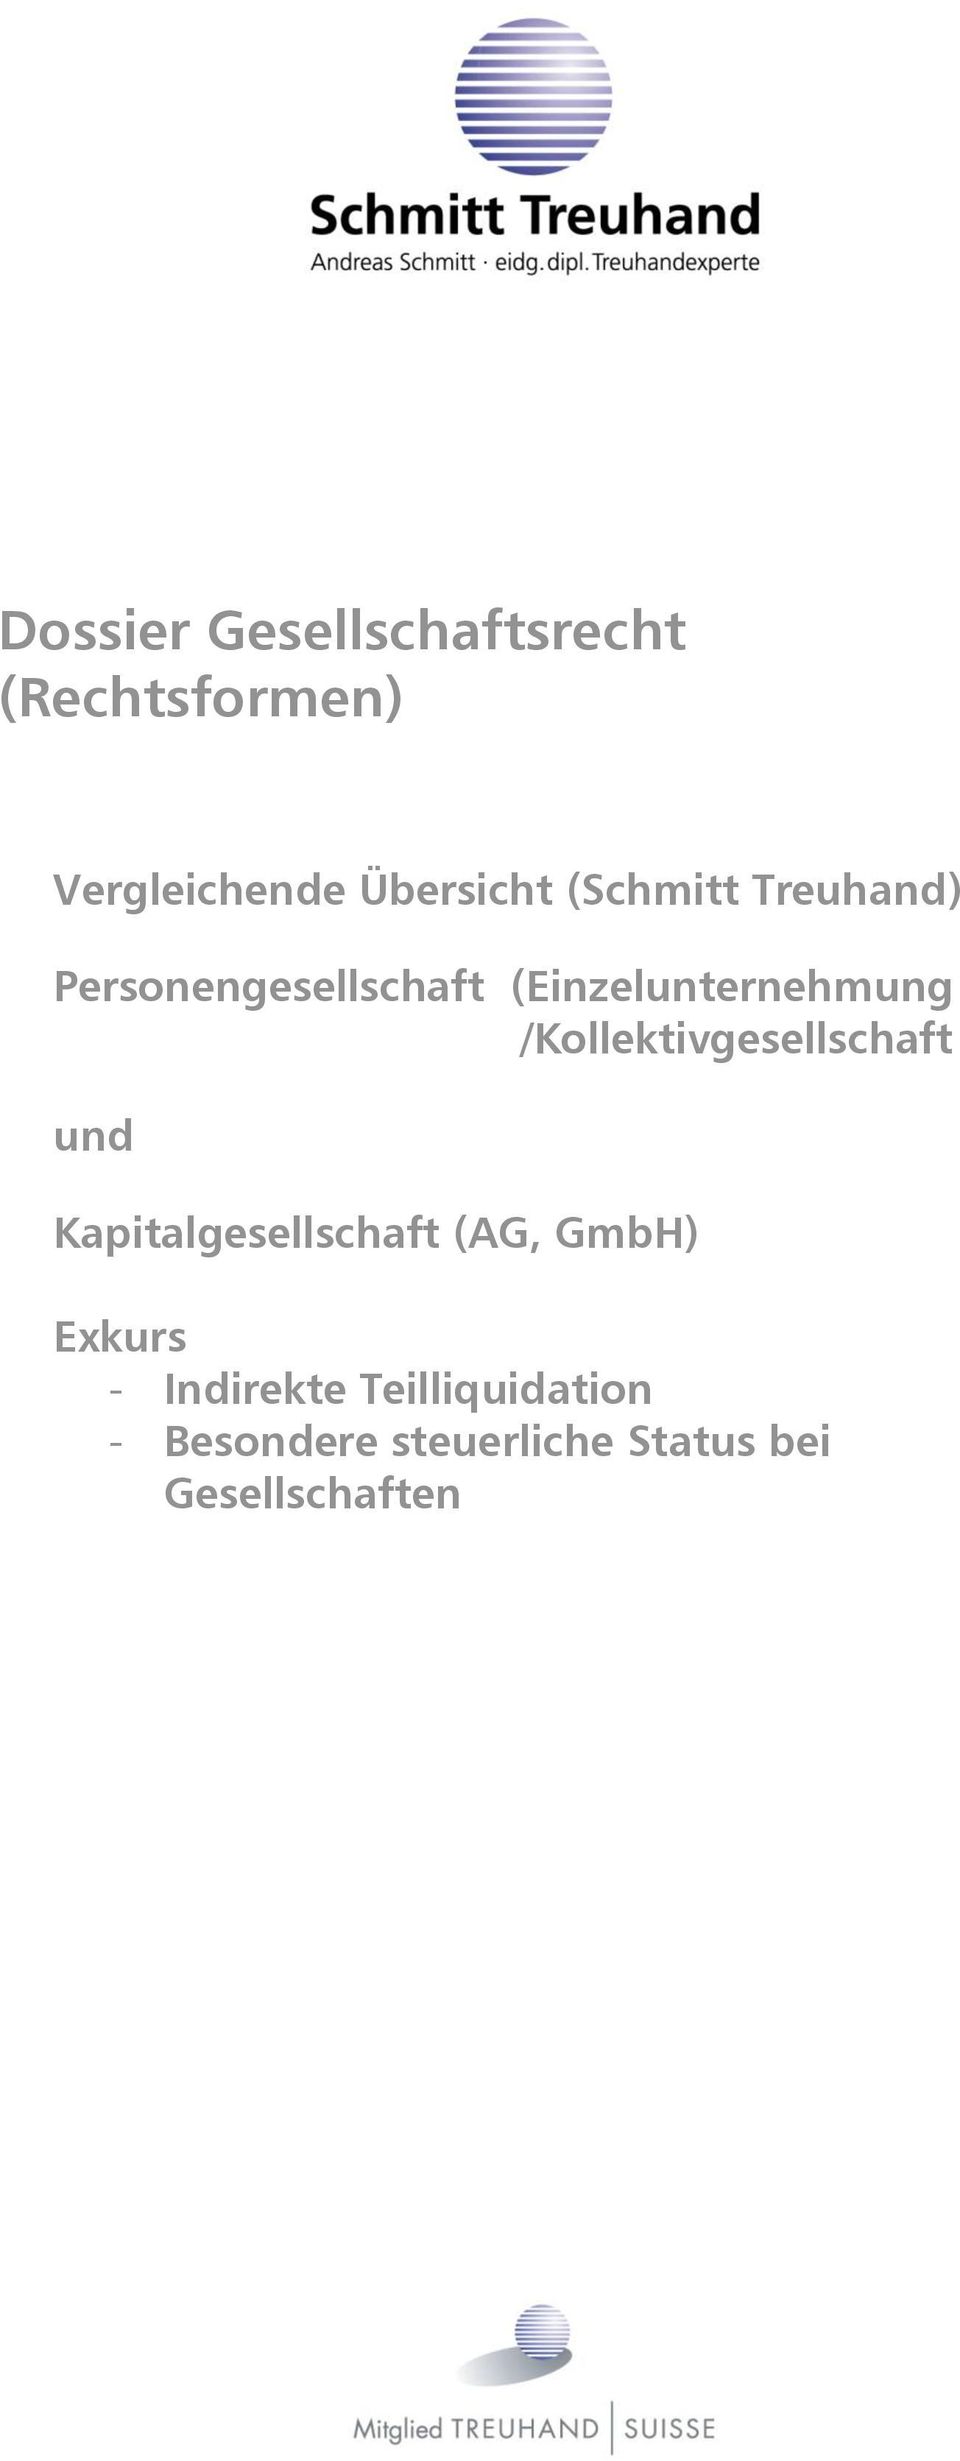 /Kollektivgesellschaft und Kapitalgesellschaft (AG, GmbH) Exkurs -